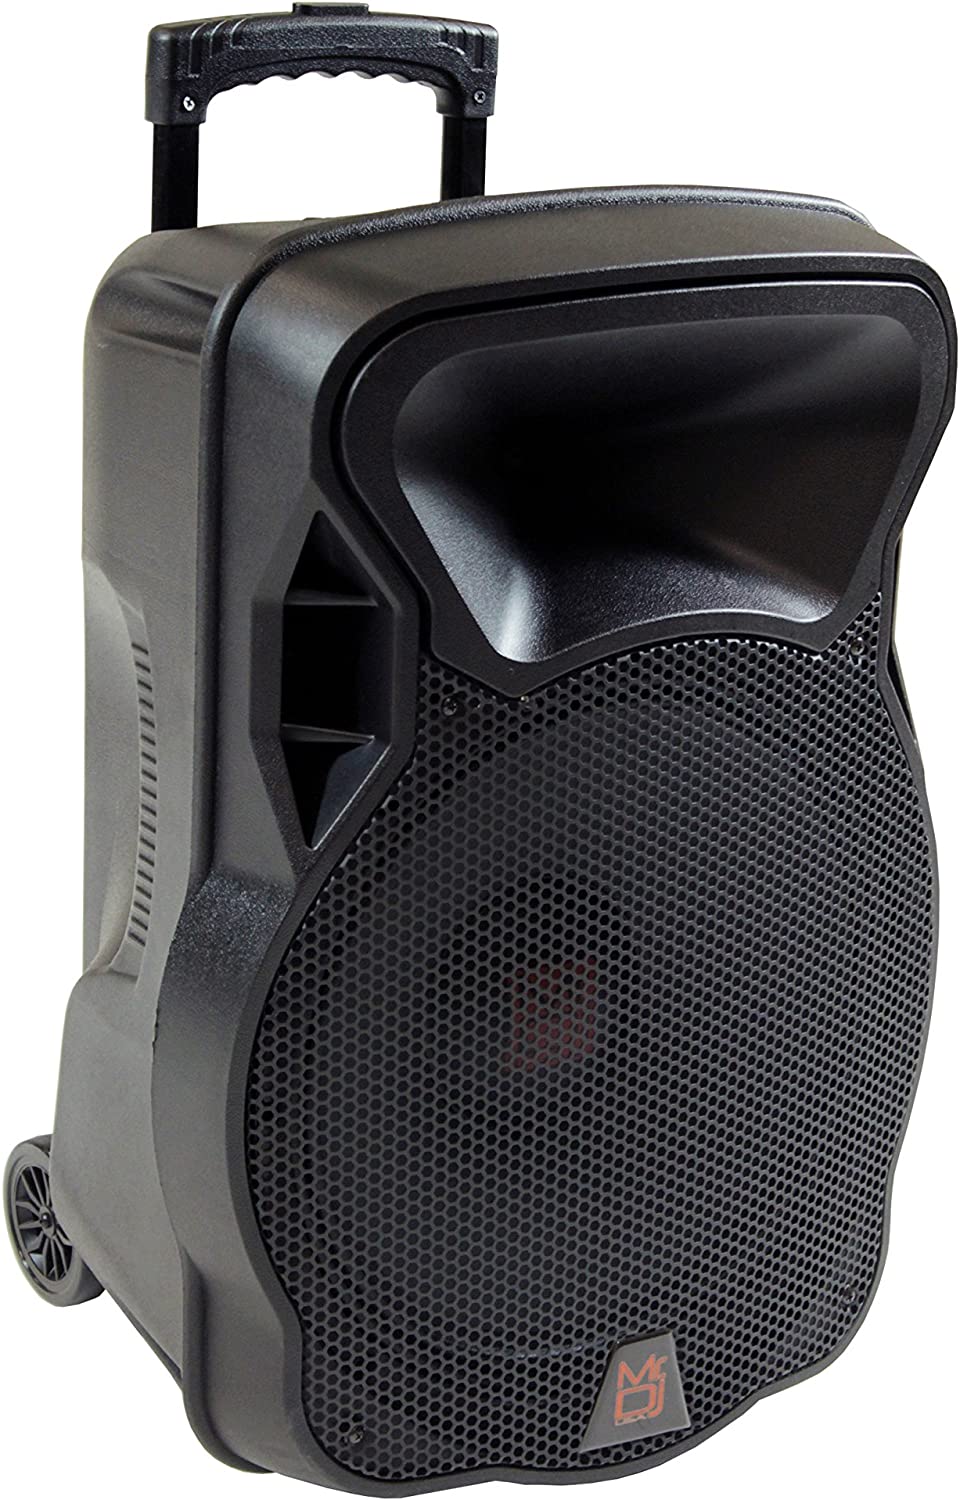 2 Mr Dj 15" 4000W Bluetooth DSP FM Radio USB Portable PA DJ Speaker